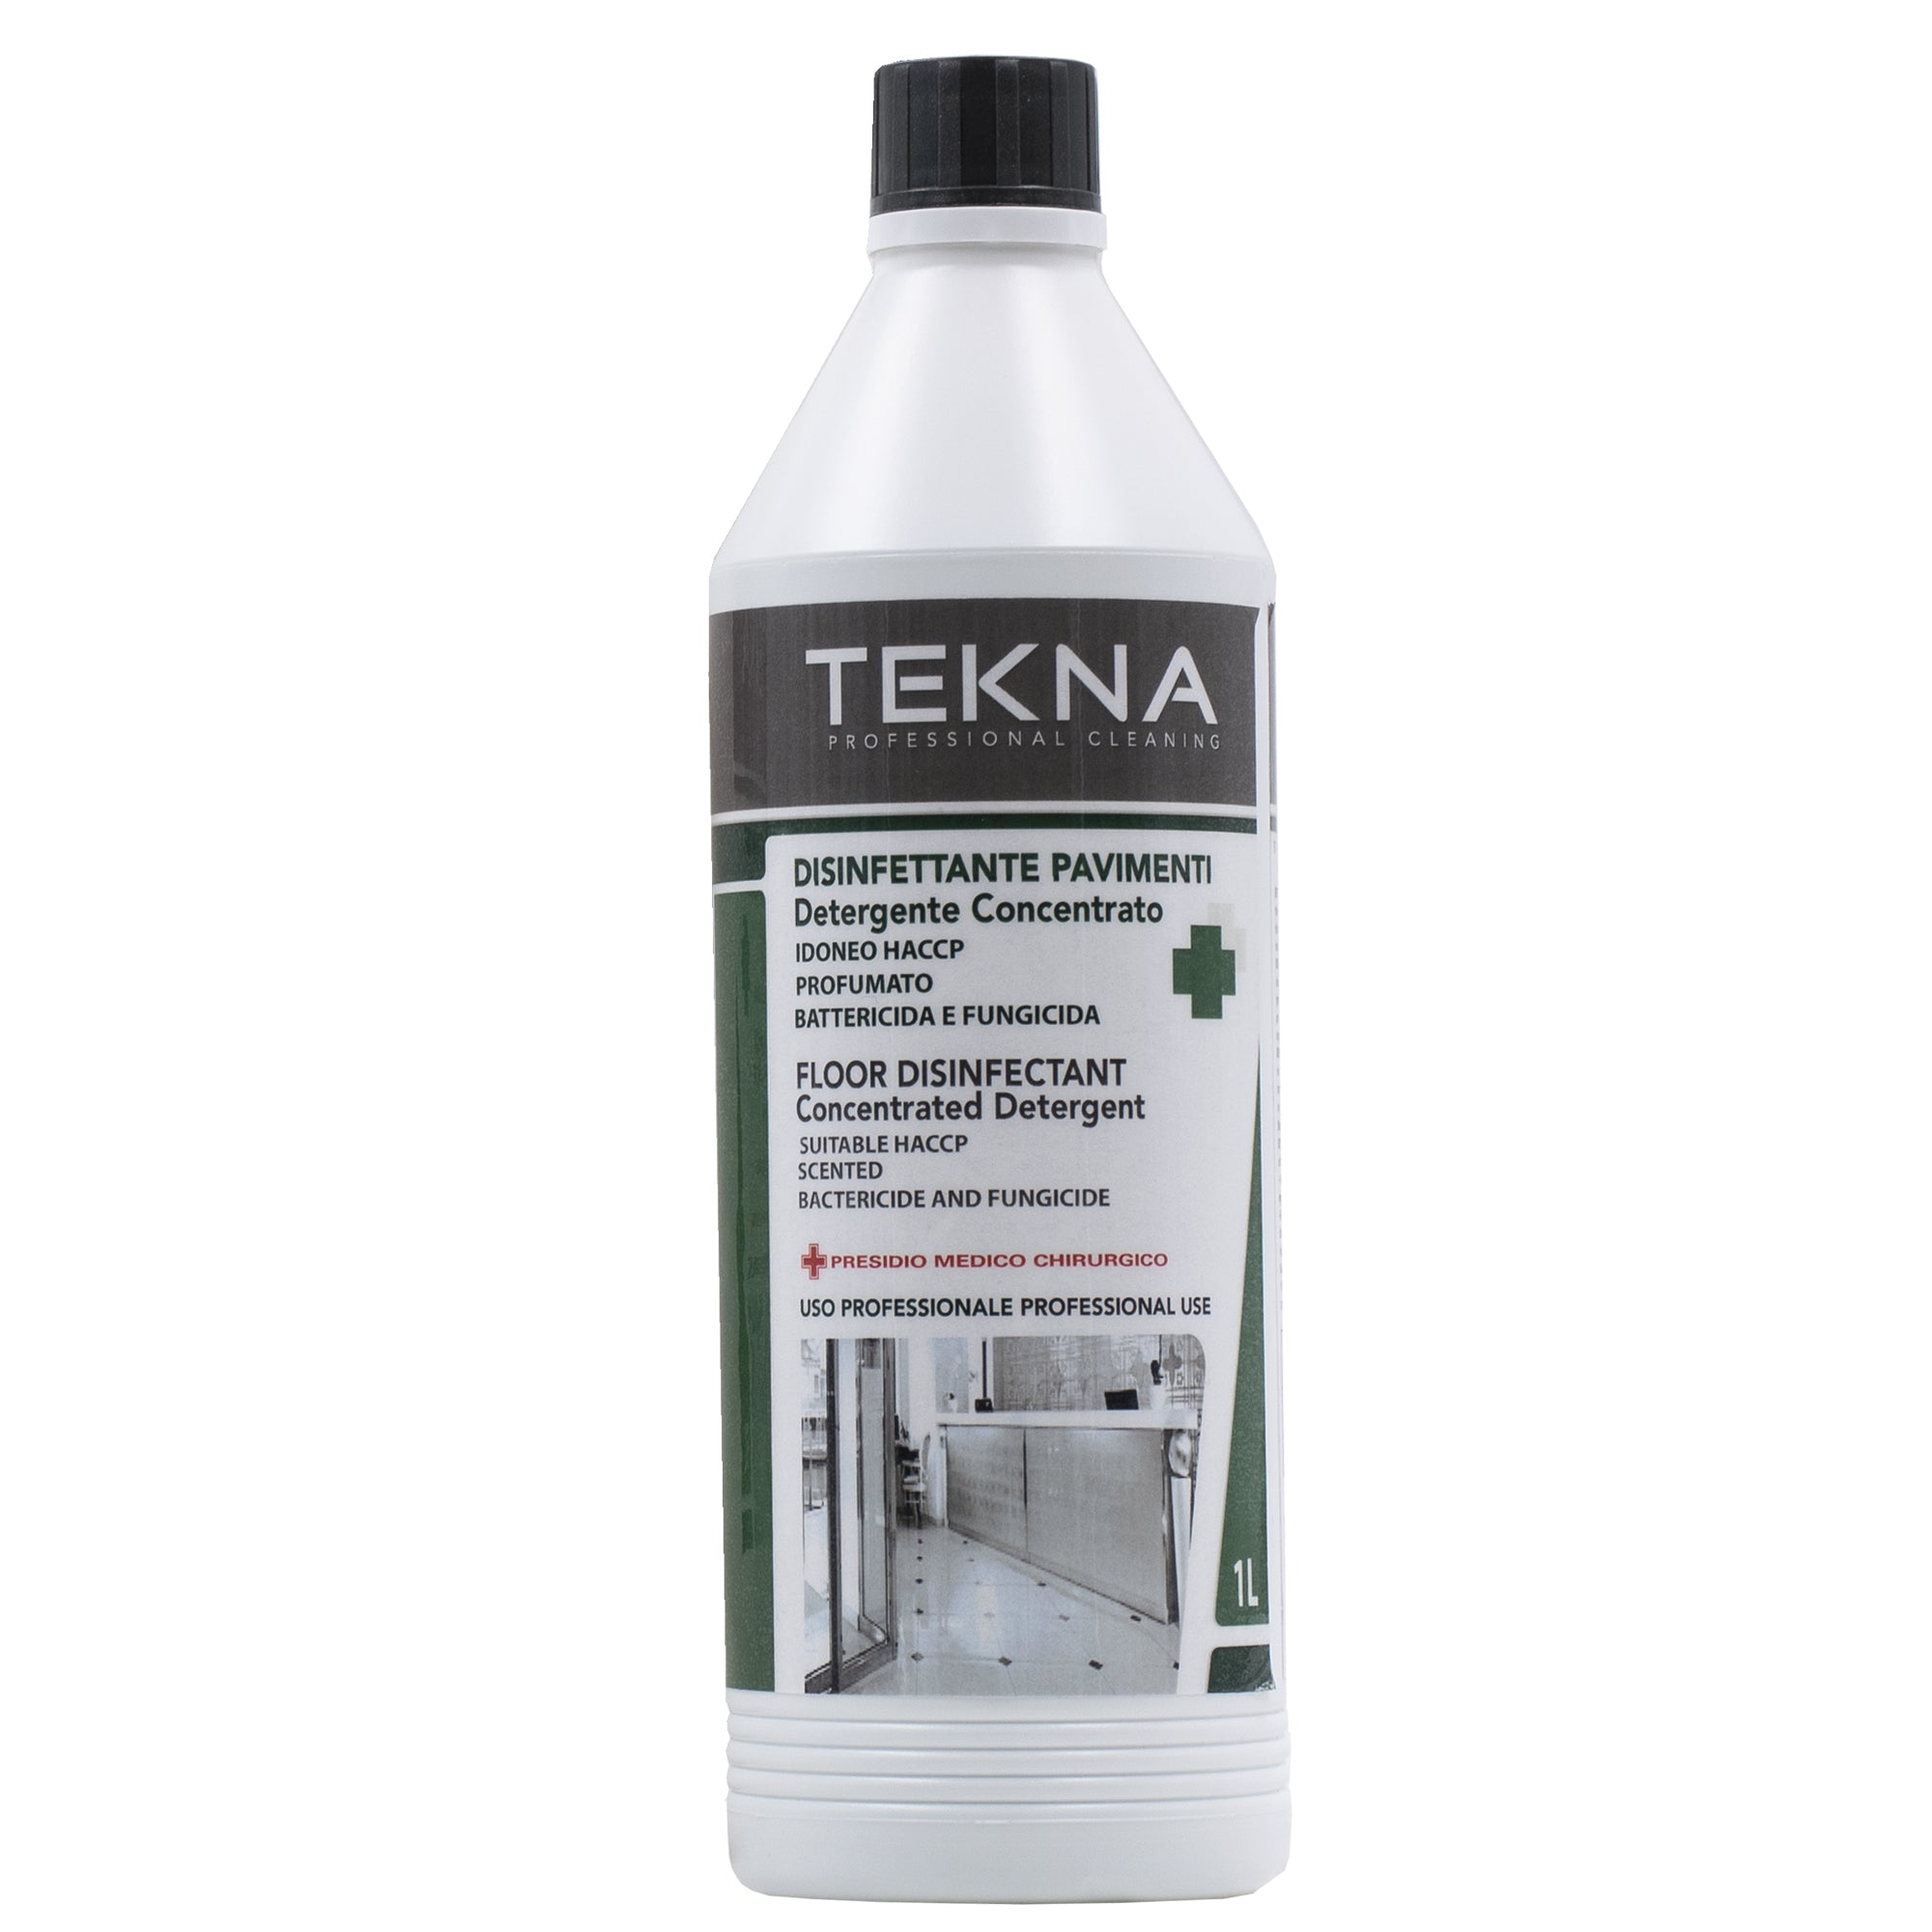 tekna-disinfettante-detergente-pavimenti-concentrato-profumato-1lt